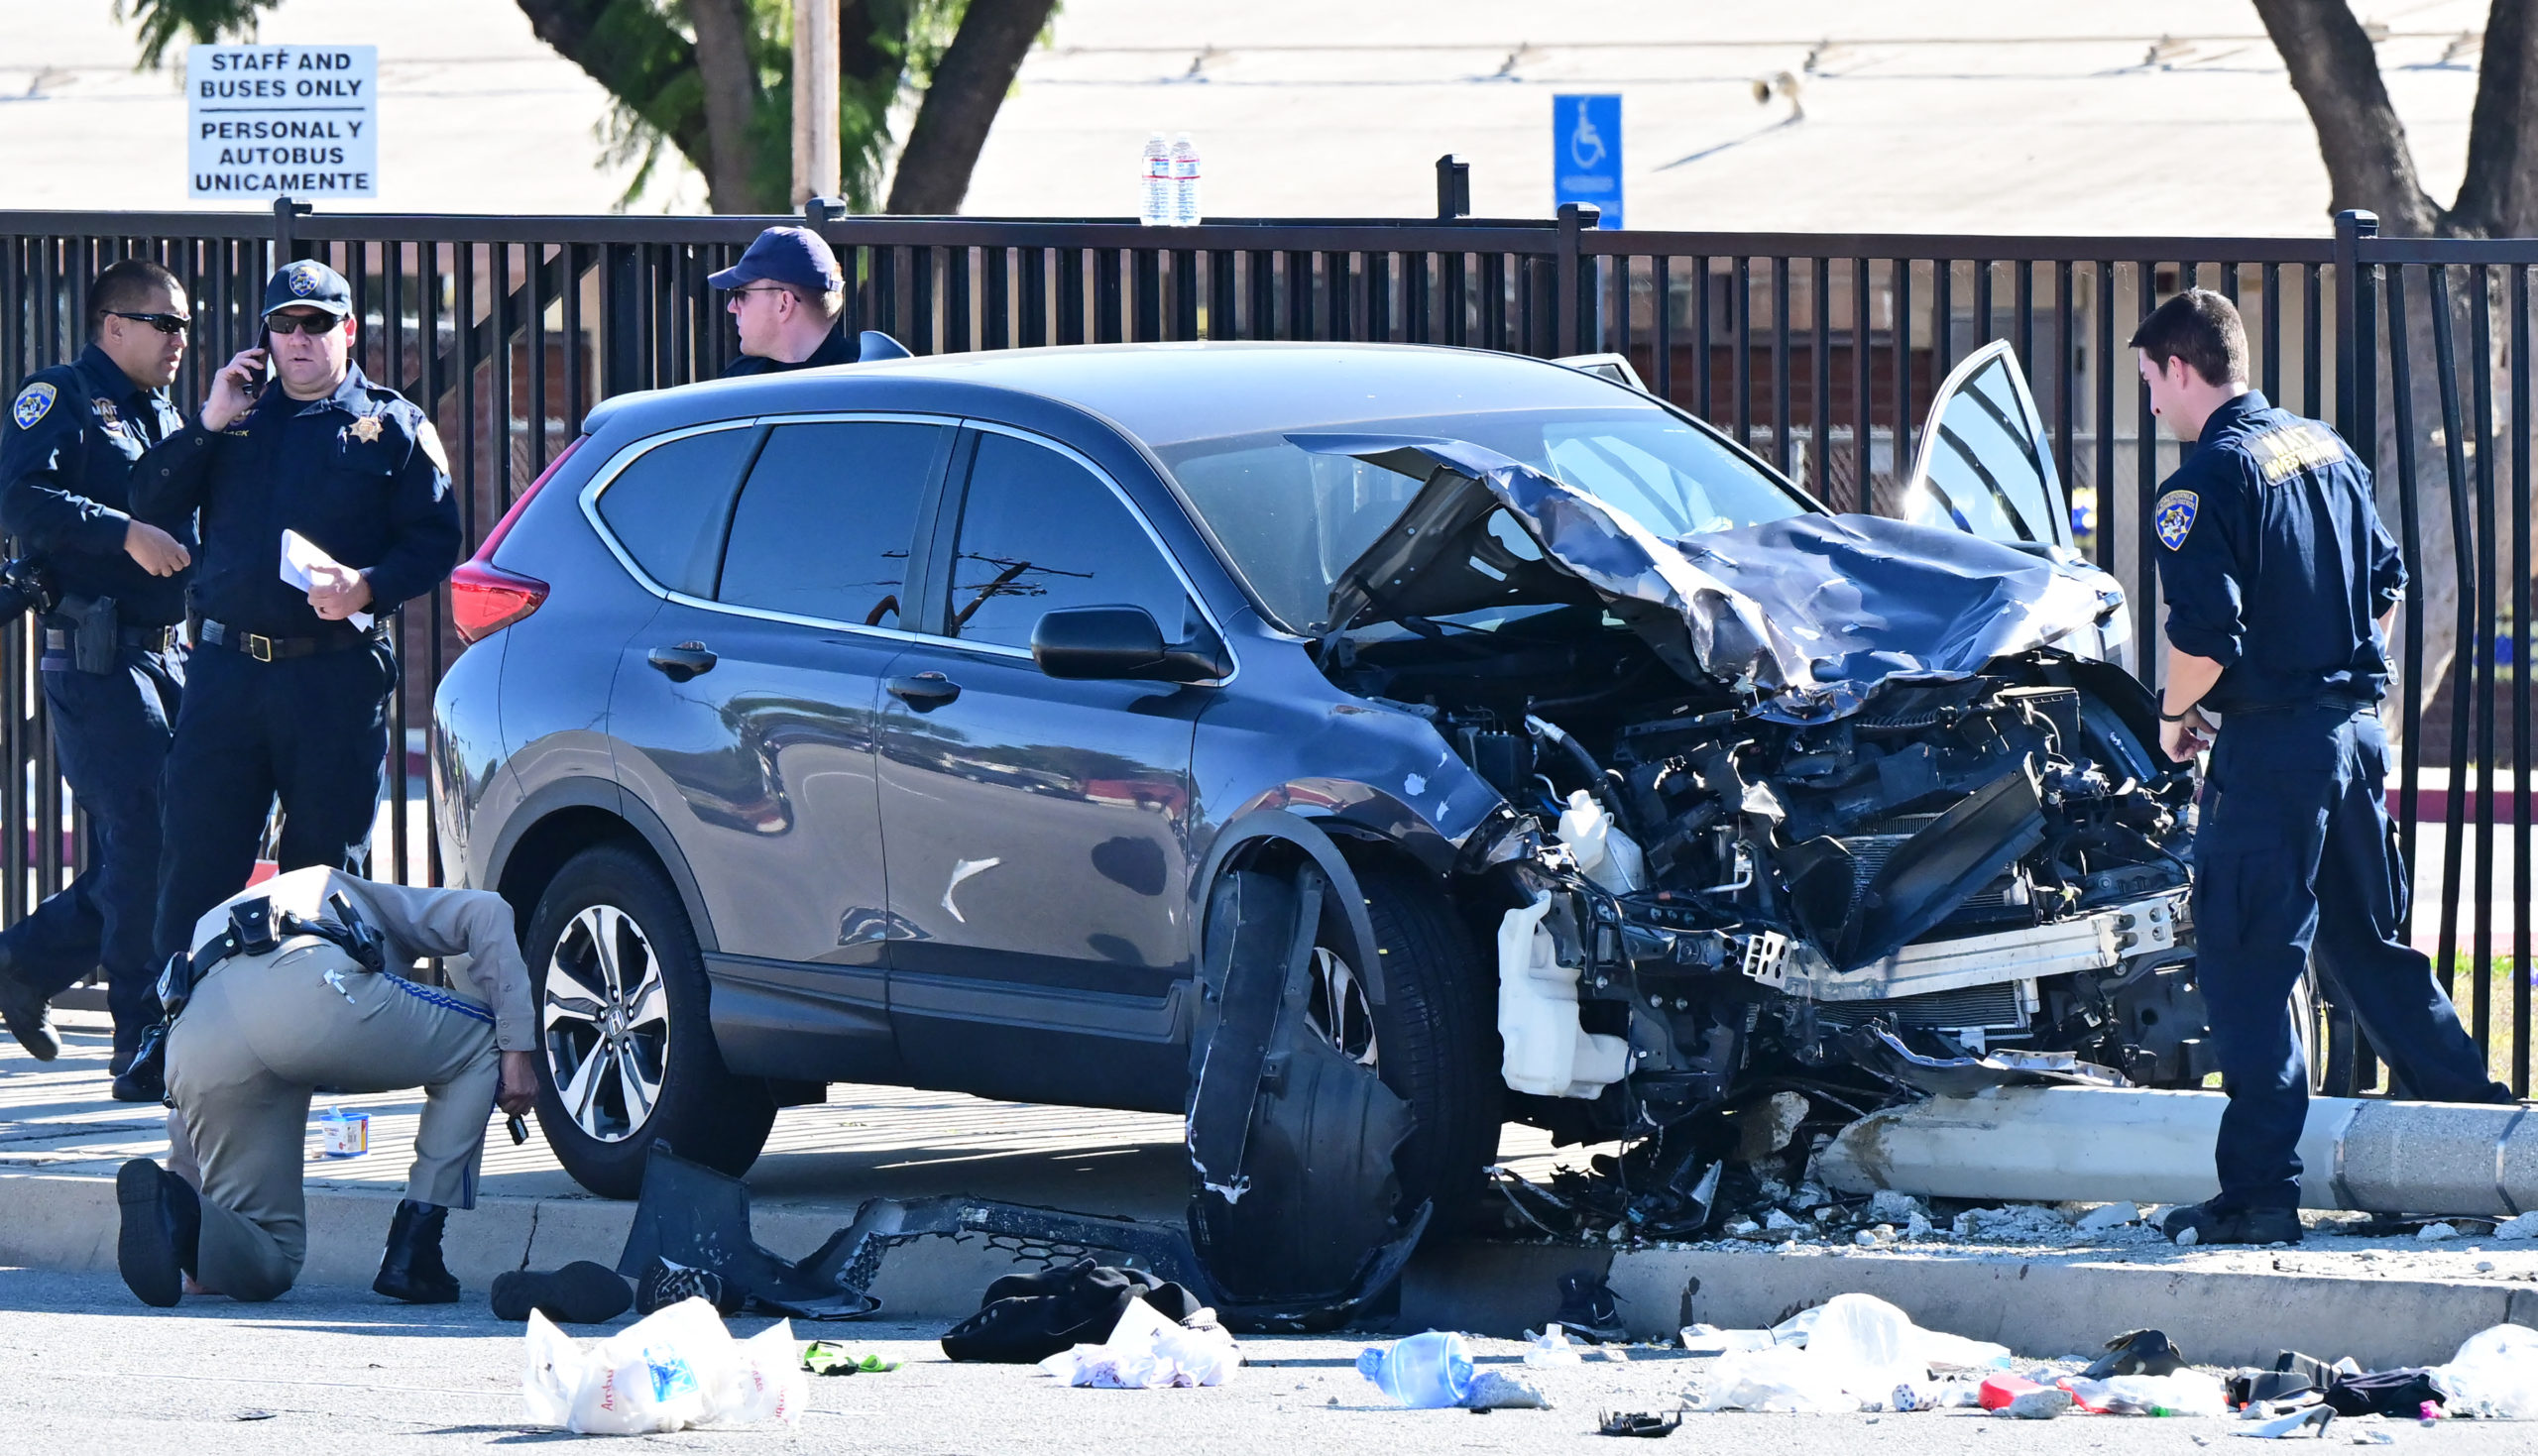 ΗΠΑ: Αυτοκίνητο έπεσε σε ομάδα ασκουμένων αστυνομικών στο Λος Άντζελες την ώρα που έκαναν τζόκινγκ – 25 τραυματίες